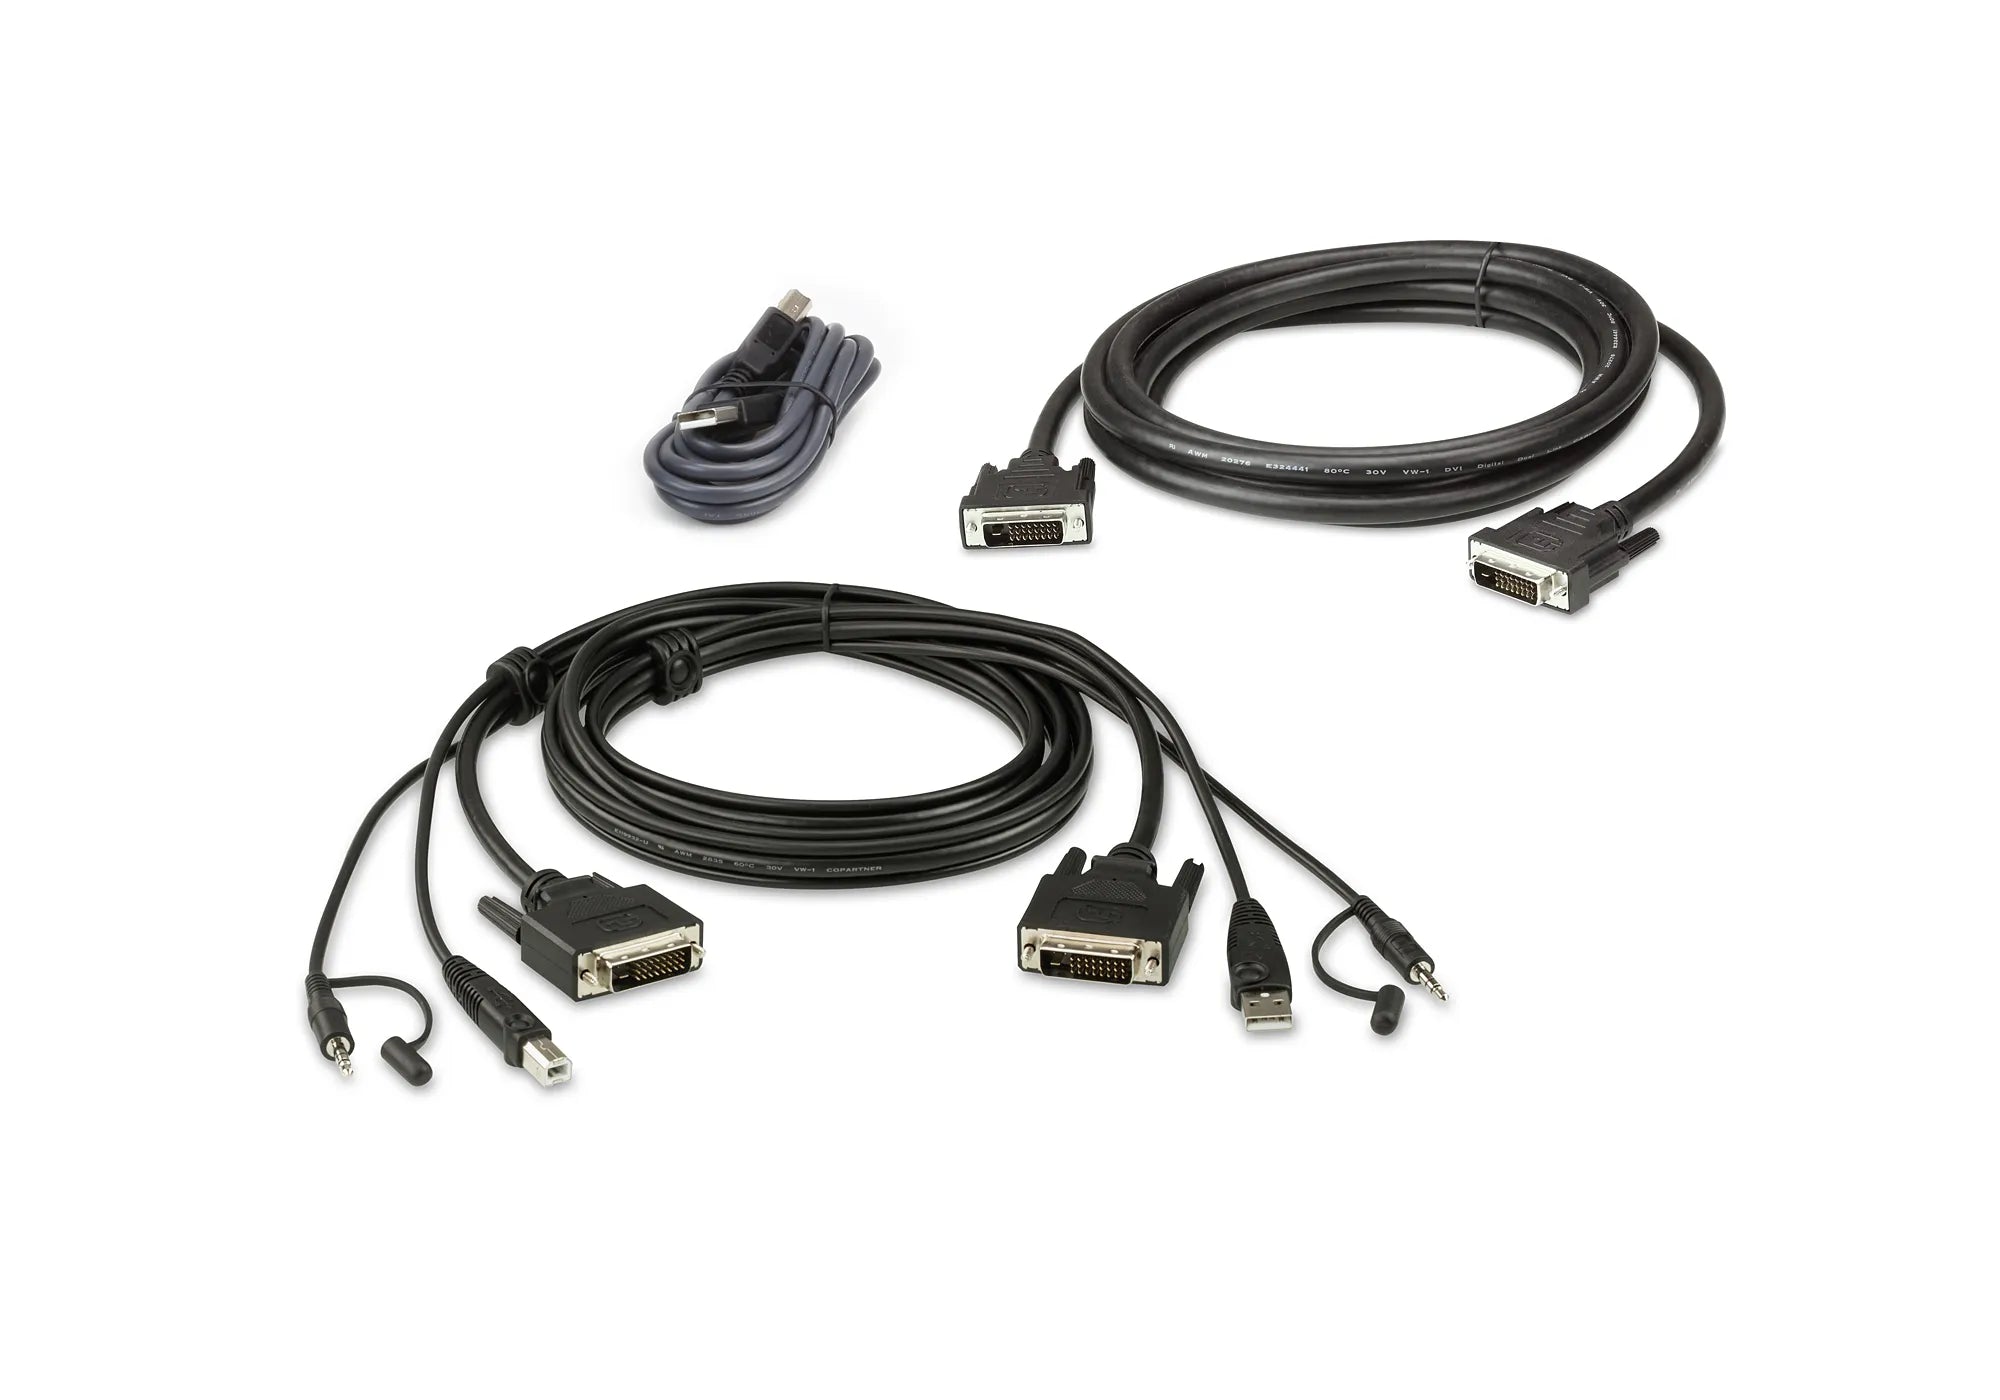 ATEN-1.8M-USB-DVI-D-Dual-Link-Dual-Display-Secure-KVM-Cable-Kit-